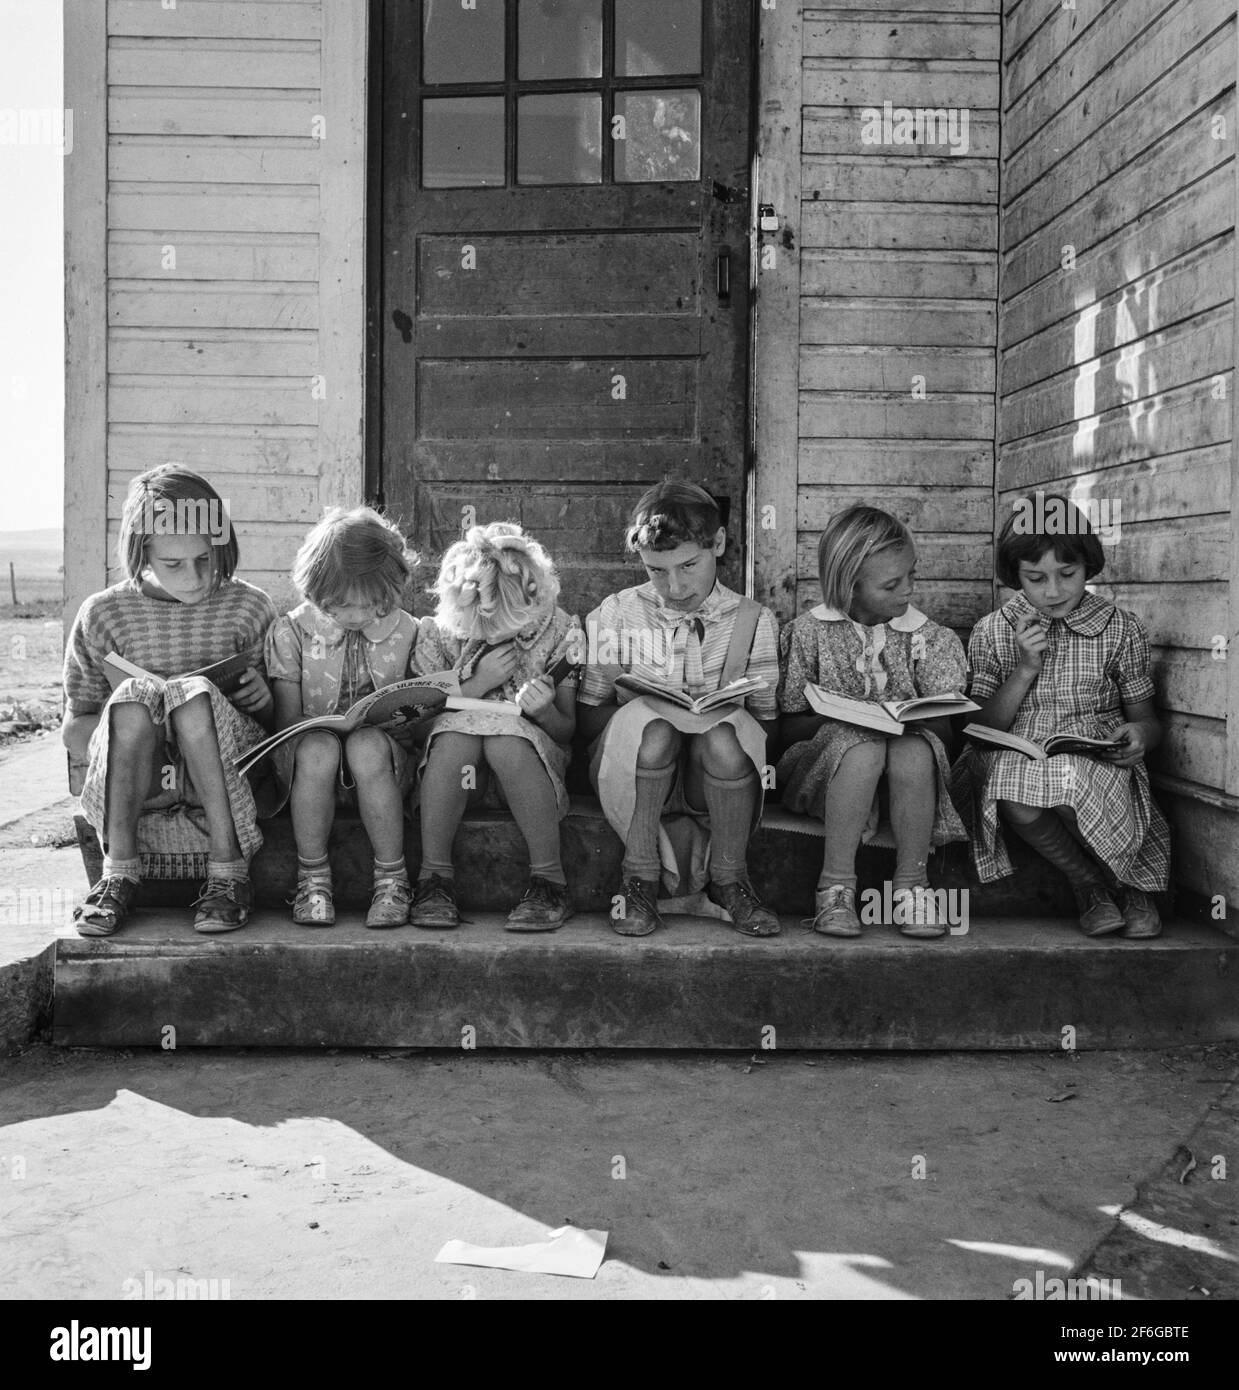 Mädchen der Lincoln Bench School studieren ihre Lesestunde. In Der Nähe Von Ontario, Malheur County, Oregon. 1939. Foto von Dorothea lange. Stockfoto